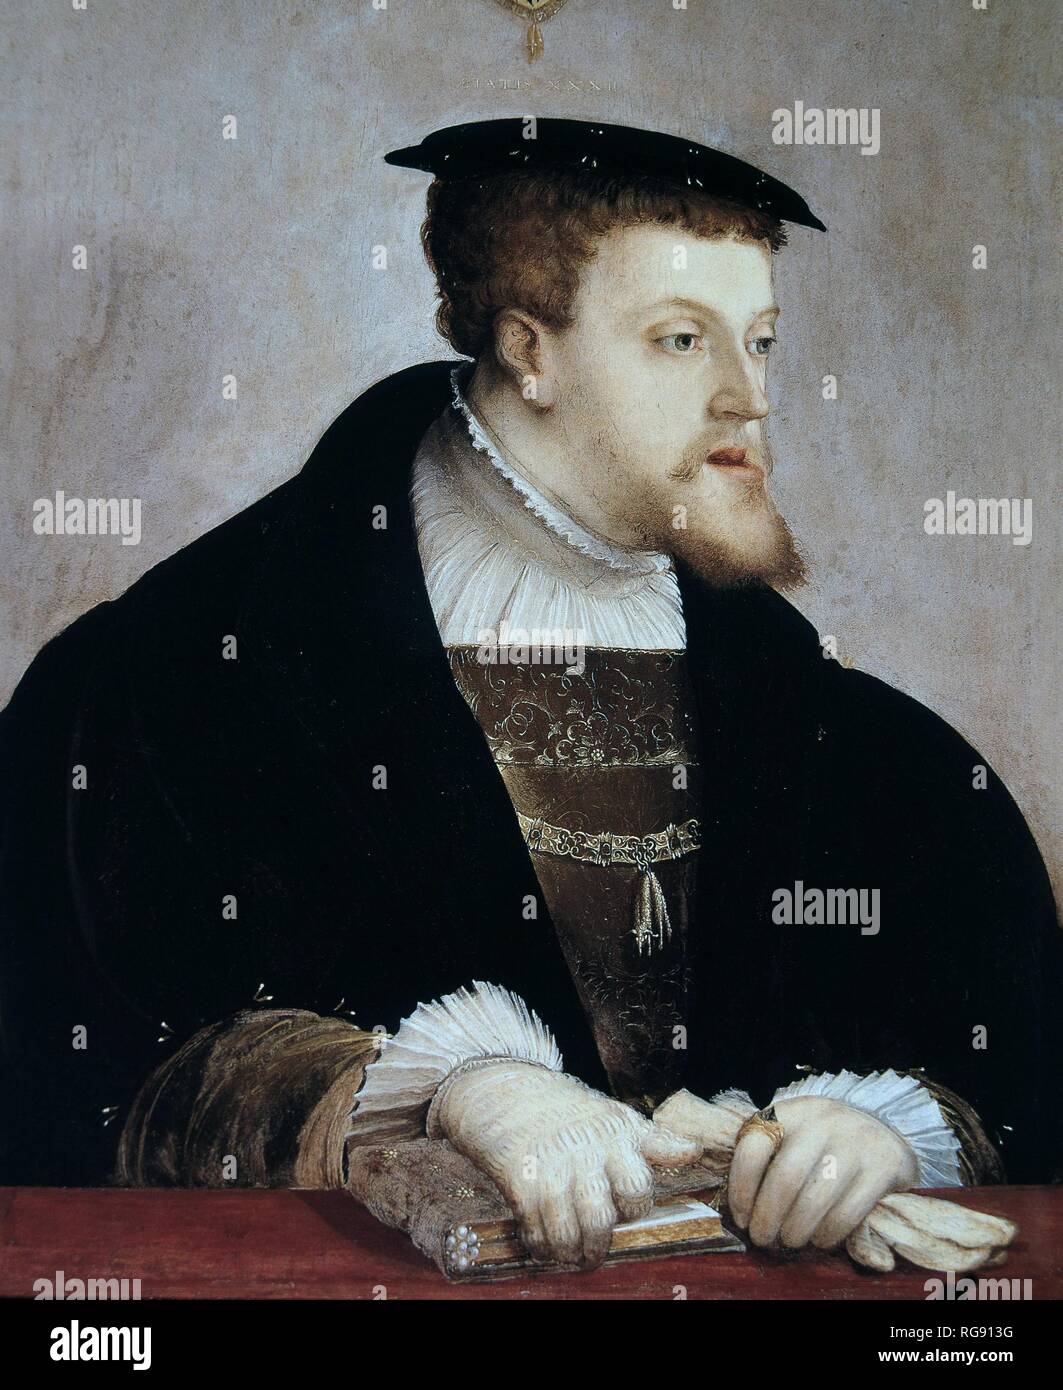 CARLOS I (V DE ALEMANIA) REY DE ESPAÑA. 1500-1585 RETRATO POR CHRISTOPH AMBERGER , hacia el año 1532 REPRODUCCION DE FASCIMIL. Autore: AMBERGER, CRISTOPH (1500-1561). Foto Stock